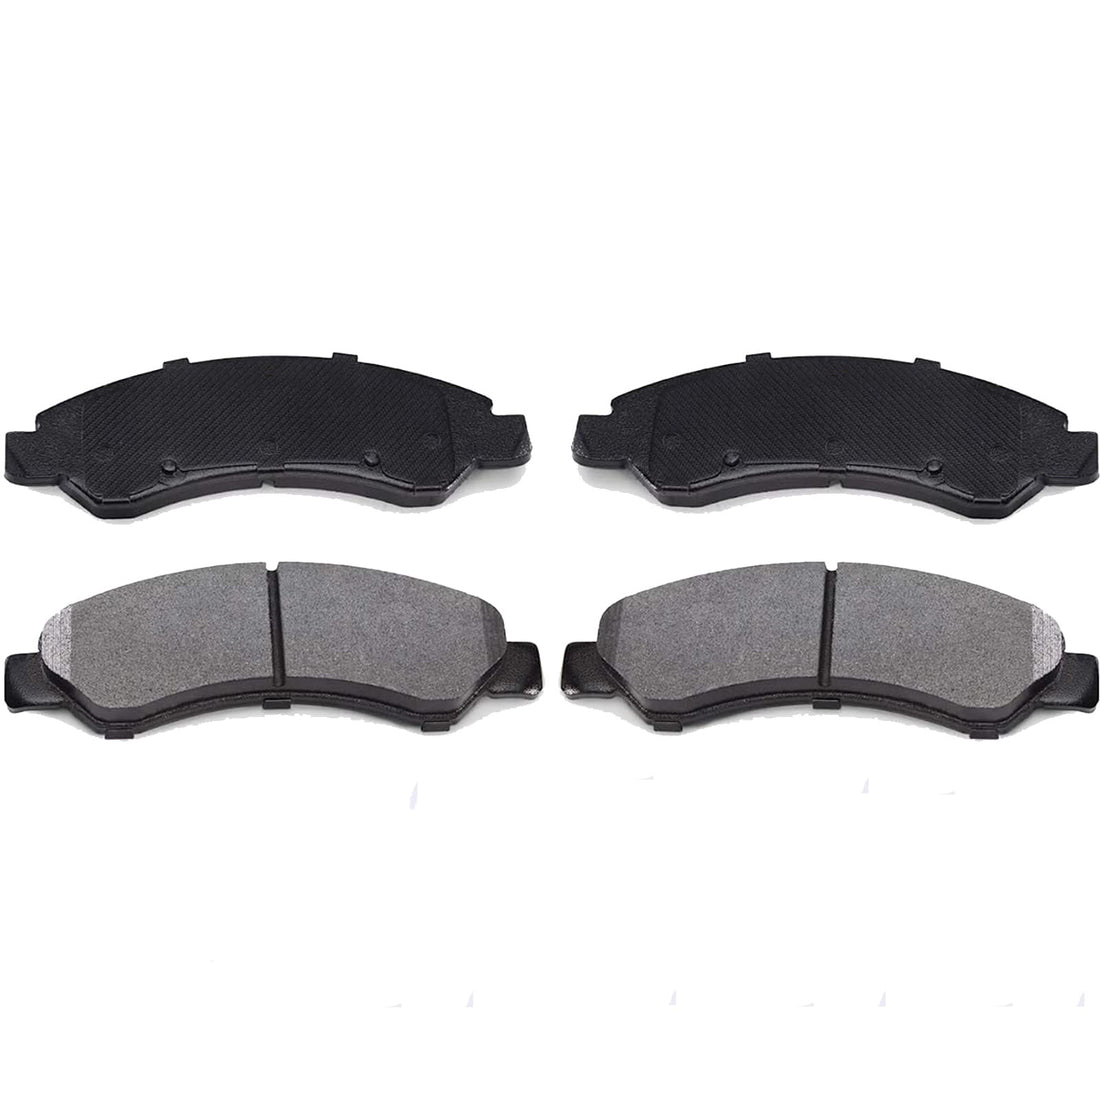 Rear Brake Pads,4PCS STP1020 Ceramic Rear Disc Brake Pads Replacement